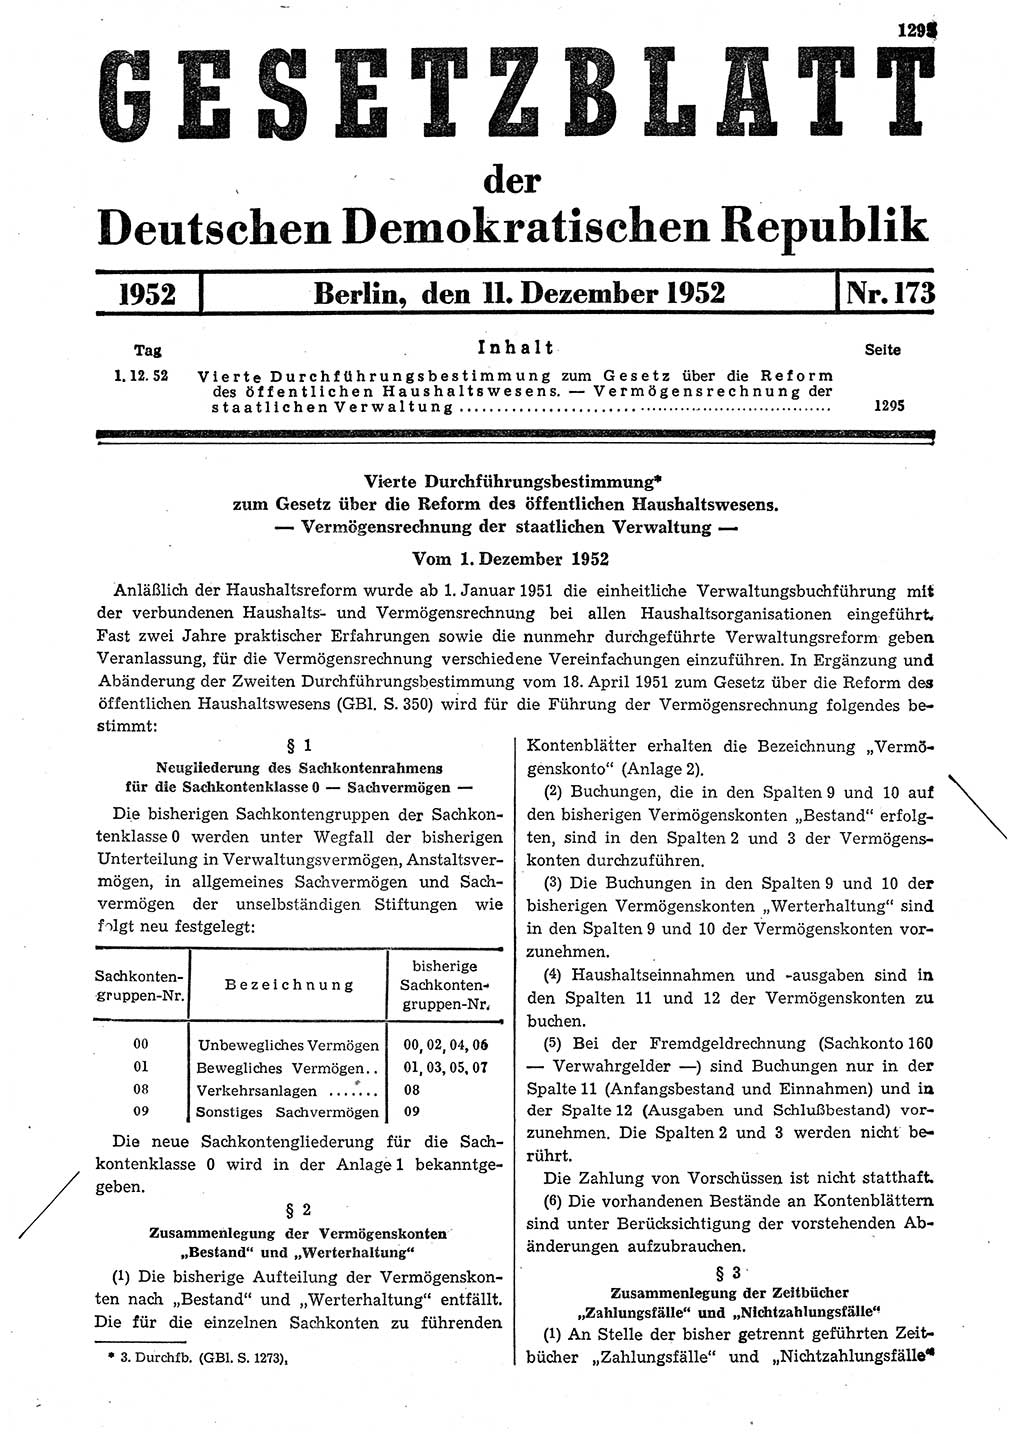 Gesetzblatt (GBl.) der Deutschen Demokratischen Republik (DDR) 1952, Seite 1295 (GBl. DDR 1952, S. 1295)